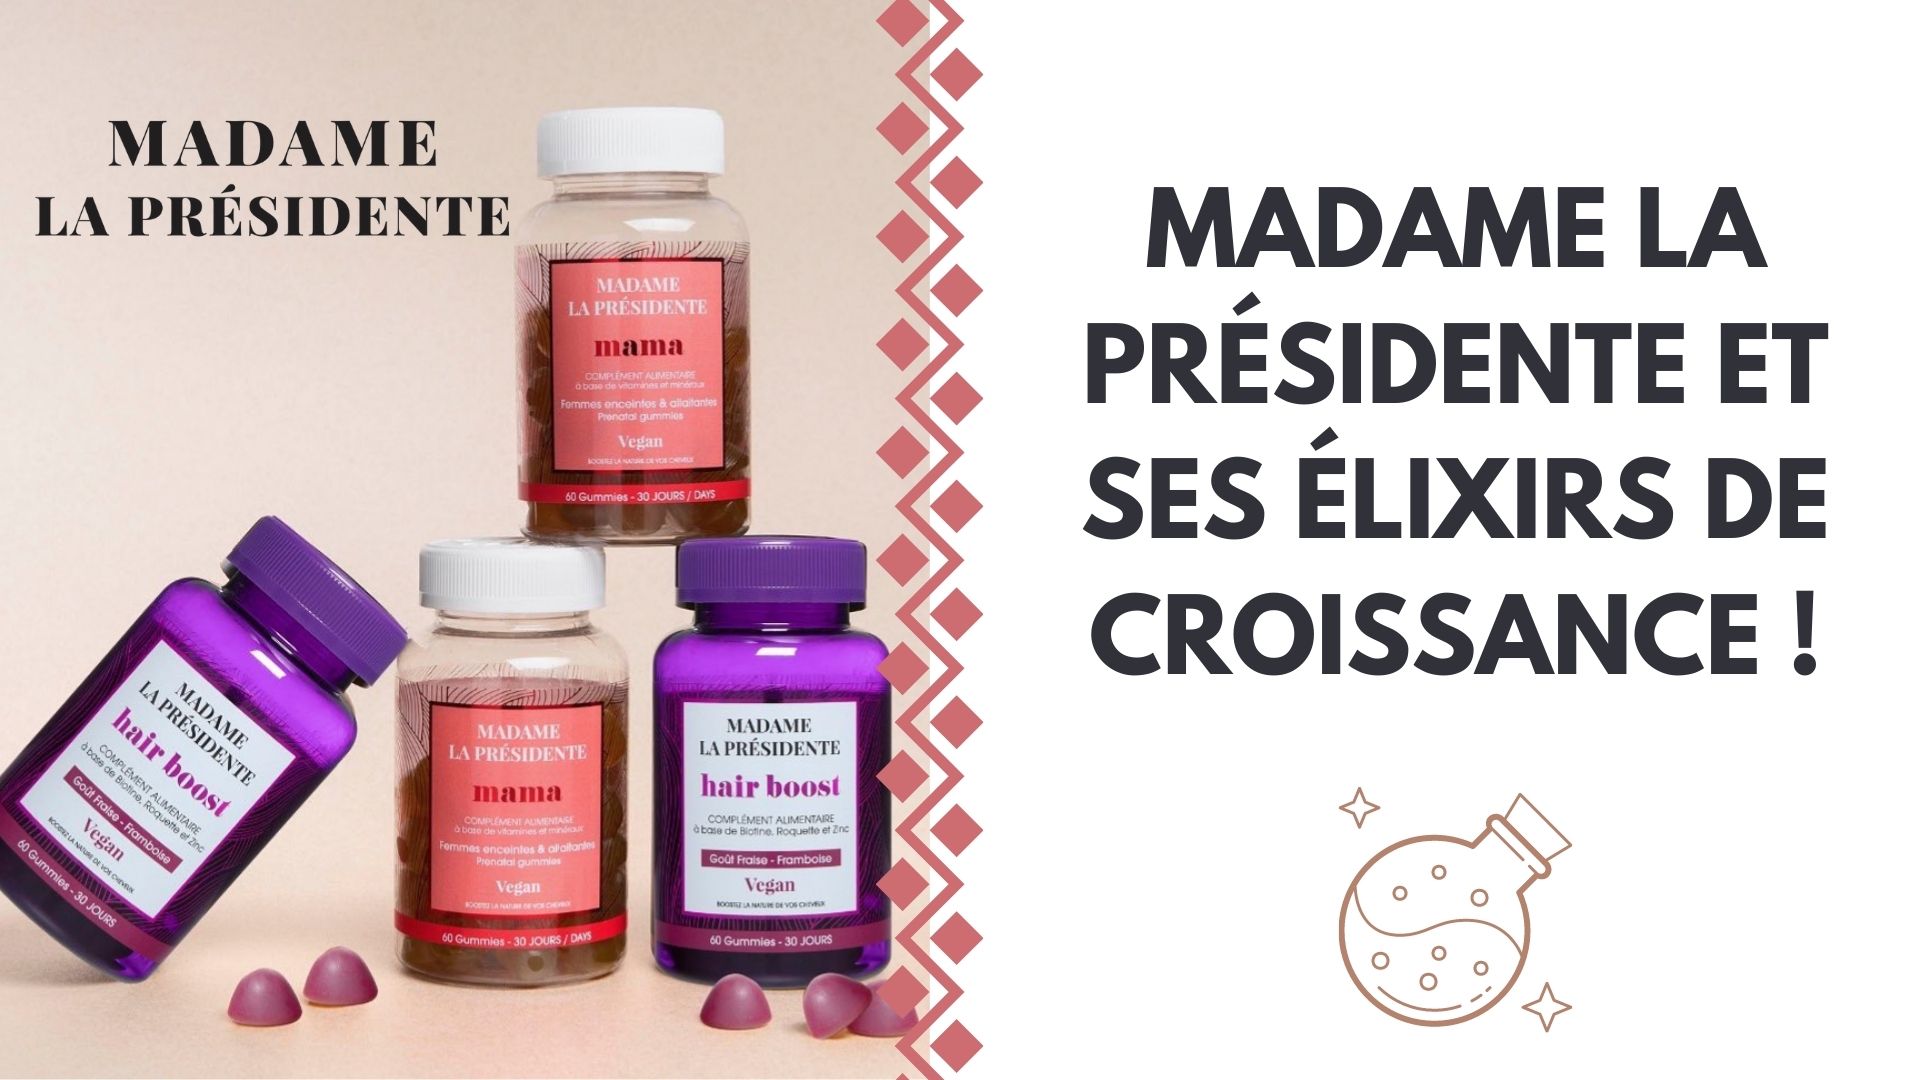 MADAME LA PRESIDENTE & SES ELIXIRS DE CROISSANCE  !